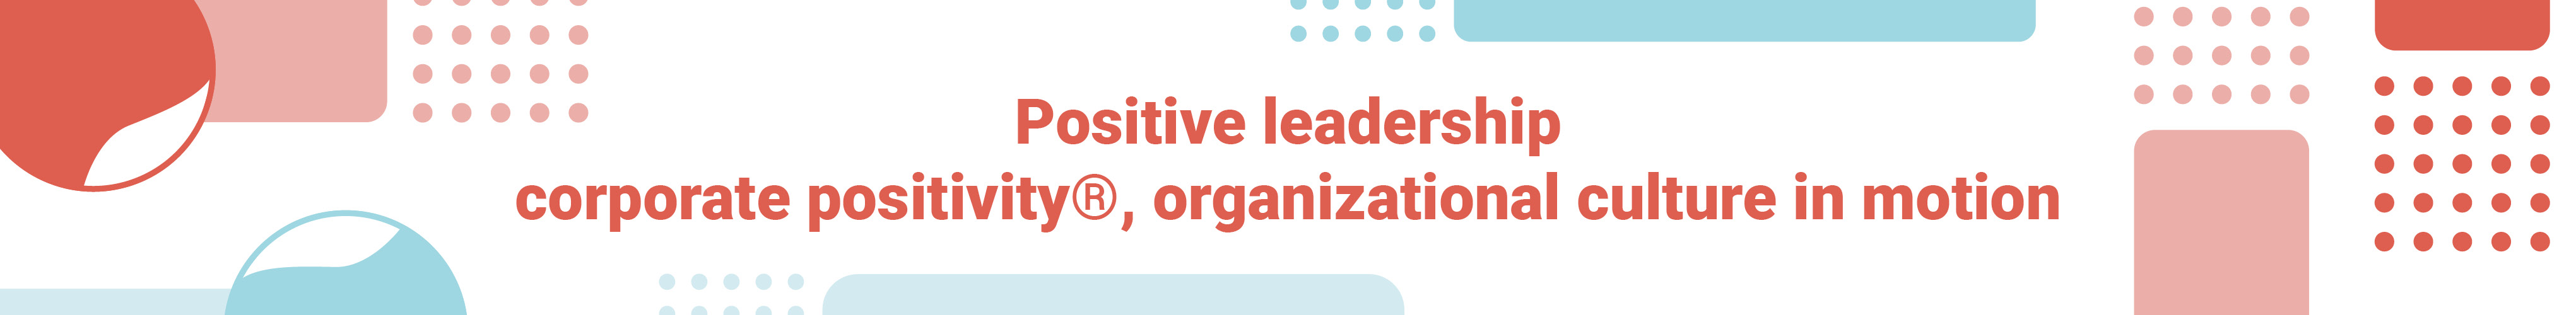 Waarom dit Belgische bedrijf overtuigd is van de kracht van positieve teamcultuur en organisatiecultuur: “Optimaal functioneren kan je leren”